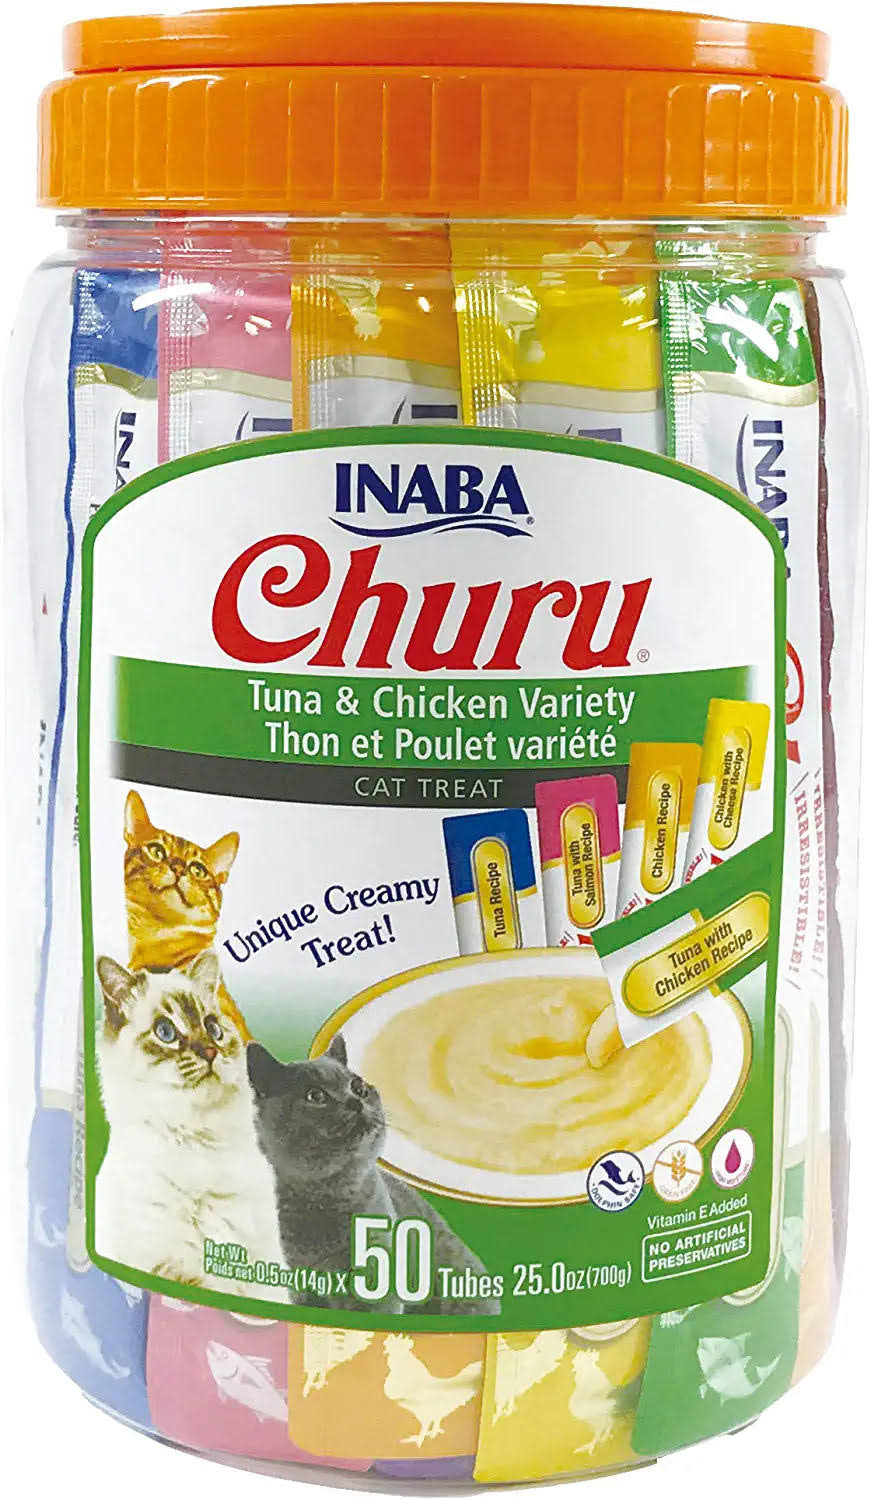 Inaba Churu Puree Cat Treat Variety Pack - Tuna & Chicken, 50 Count